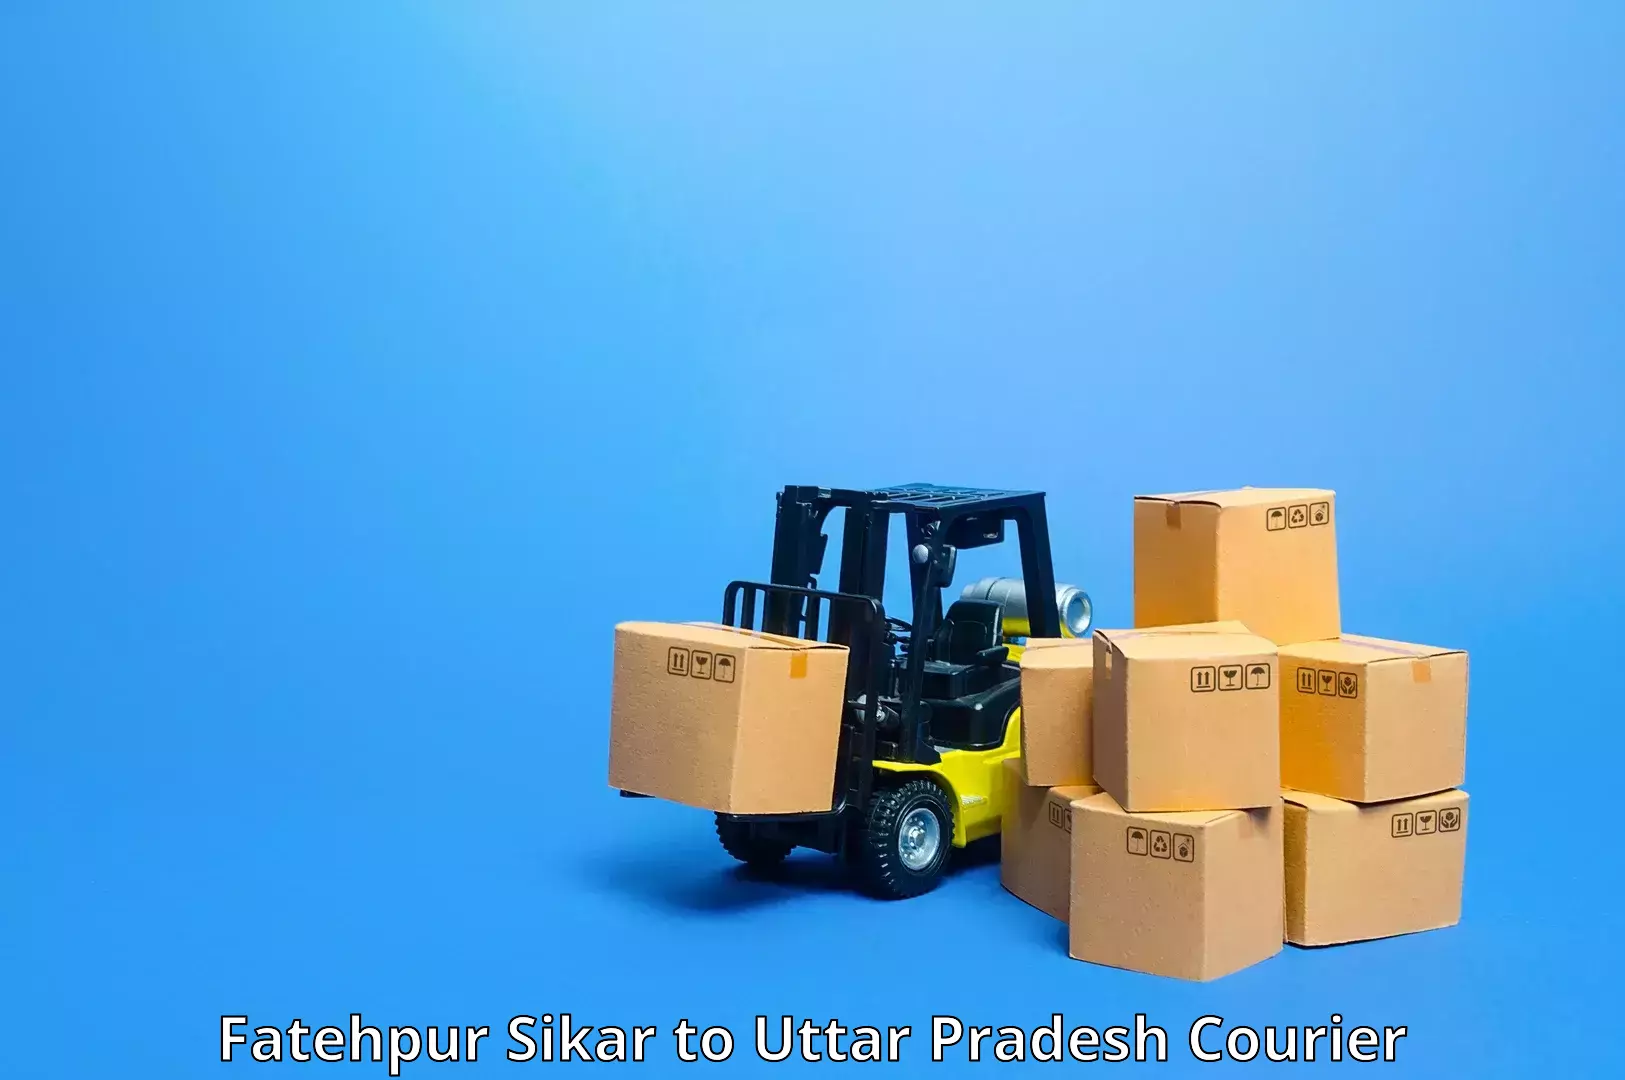 Regular parcel service Fatehpur Sikar to Bighapur